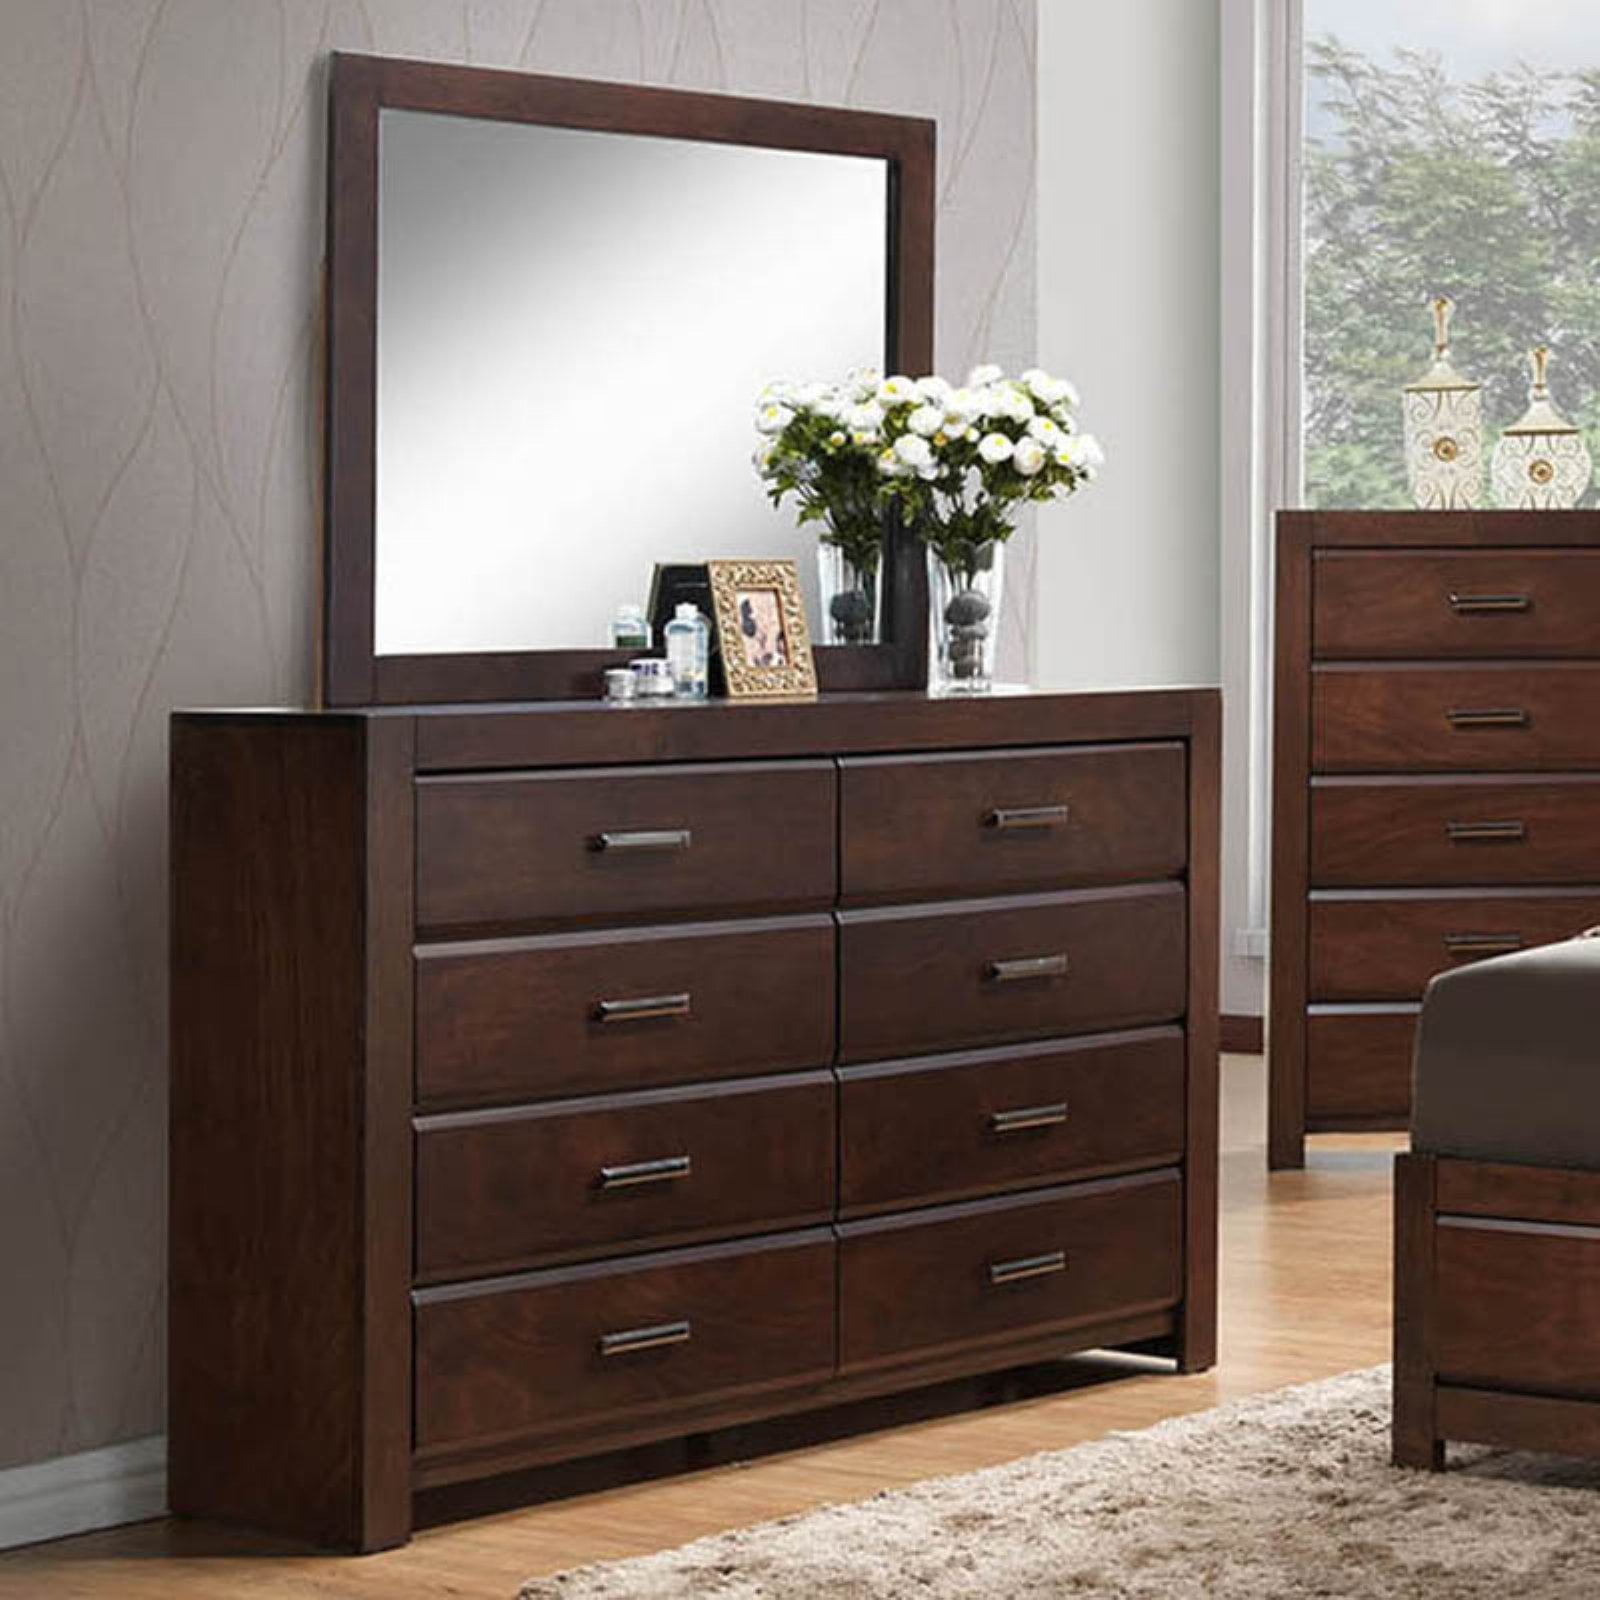 K&B Furniture Walnut Wood Dresser with Optional Mirror - Walmart.com